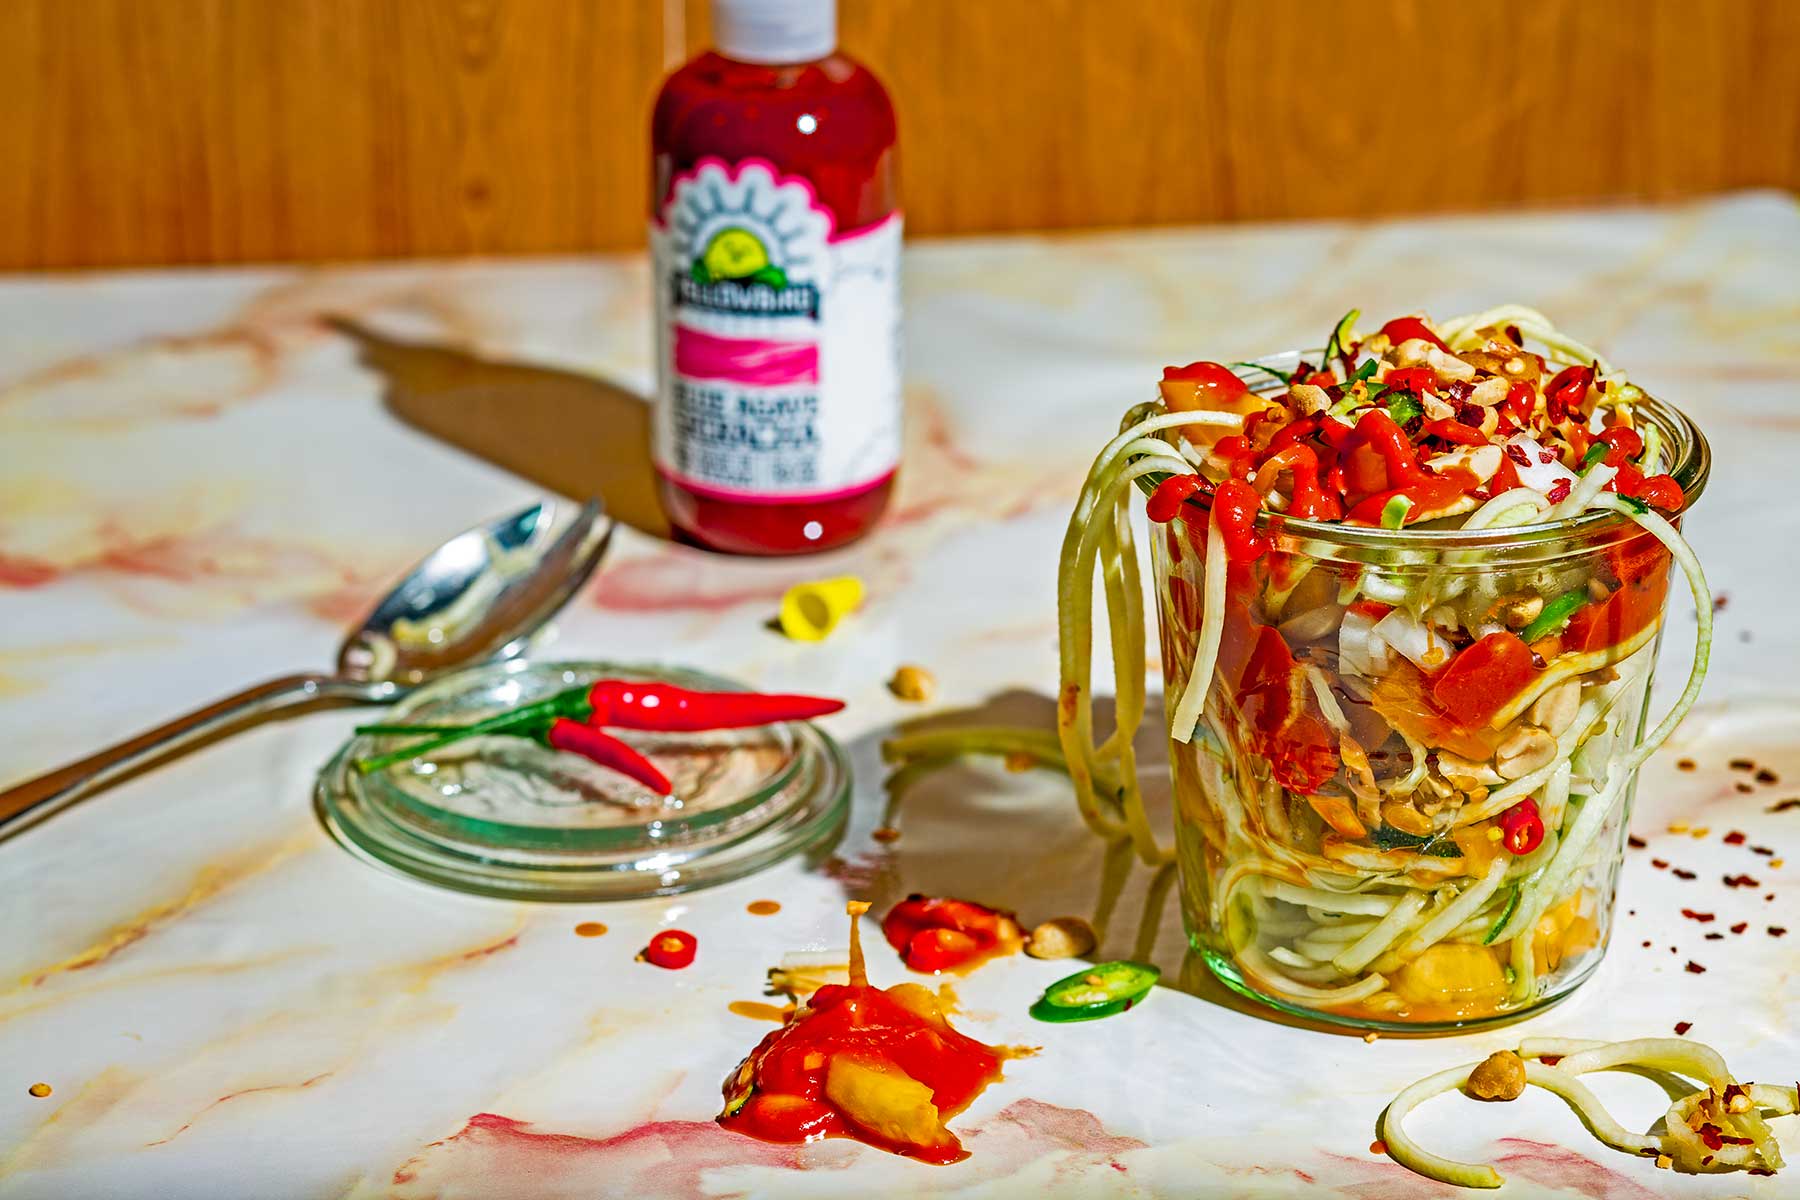 Yellowbird Sriracha Zucchini Salad